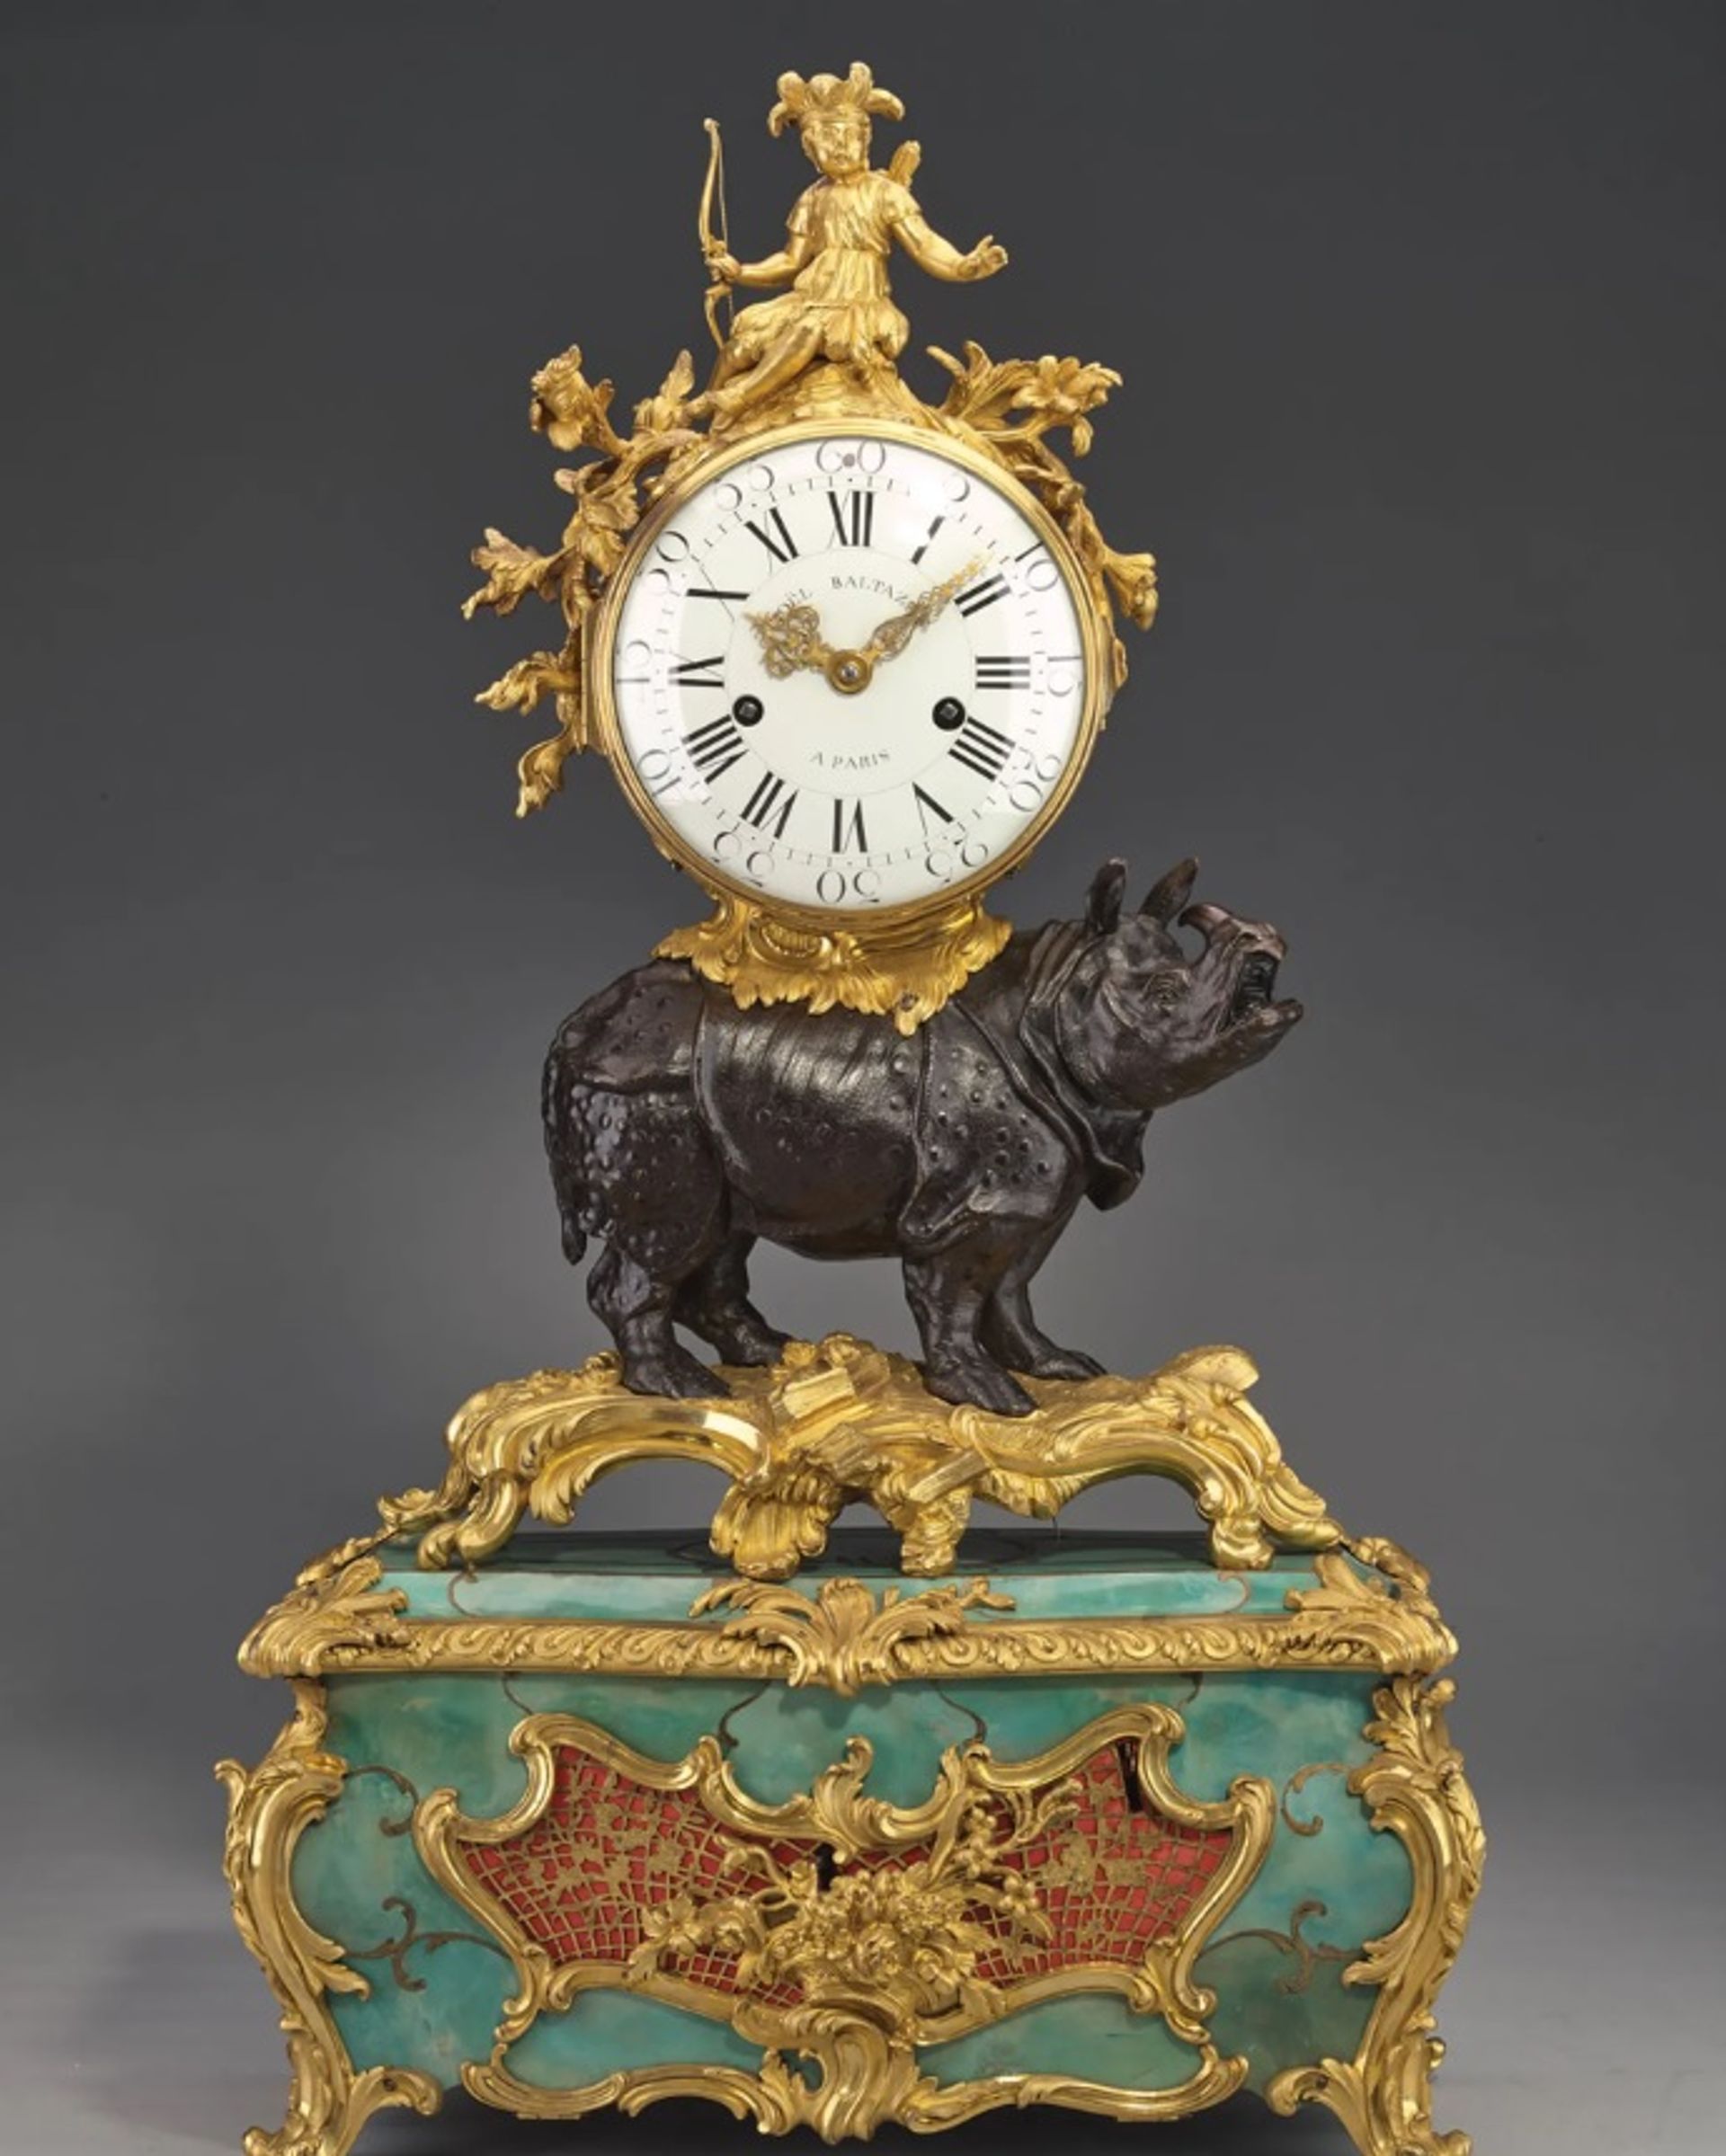 קלרה העניקה השראה לתיאורים אמנותיים רבים, כולל השעון הזה משנת 1750 מאת ז'אן ז'וזף דה סן ז'רמן

אוסף פרנסיה; באדיבות ה”רייקסמוזיאום”